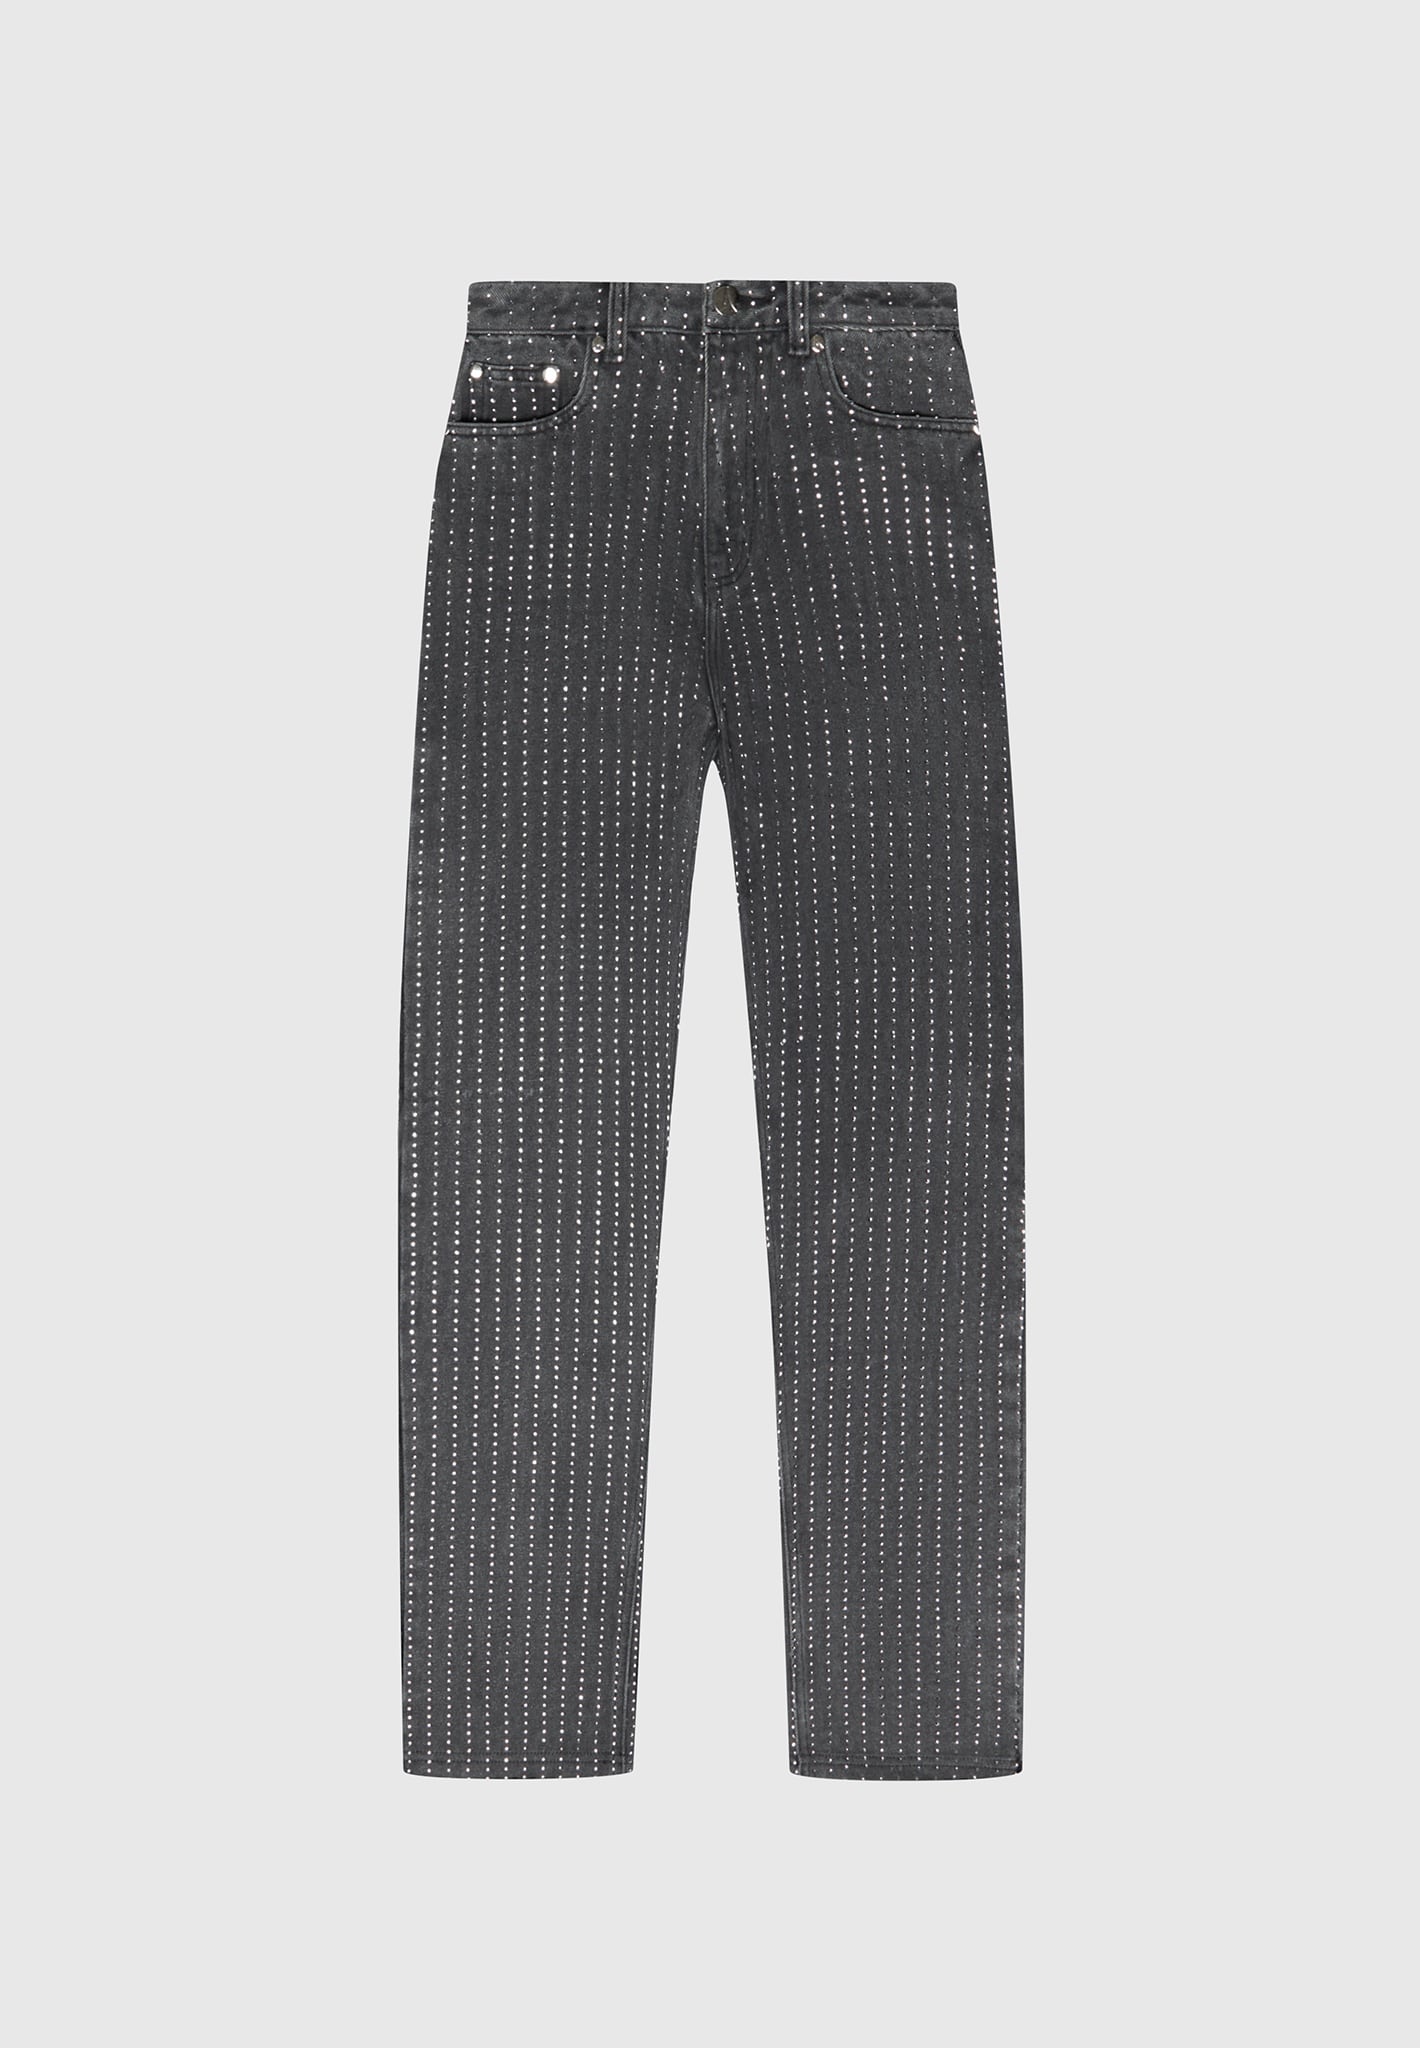 Rhinestone Mom Jeans - Washed Grey